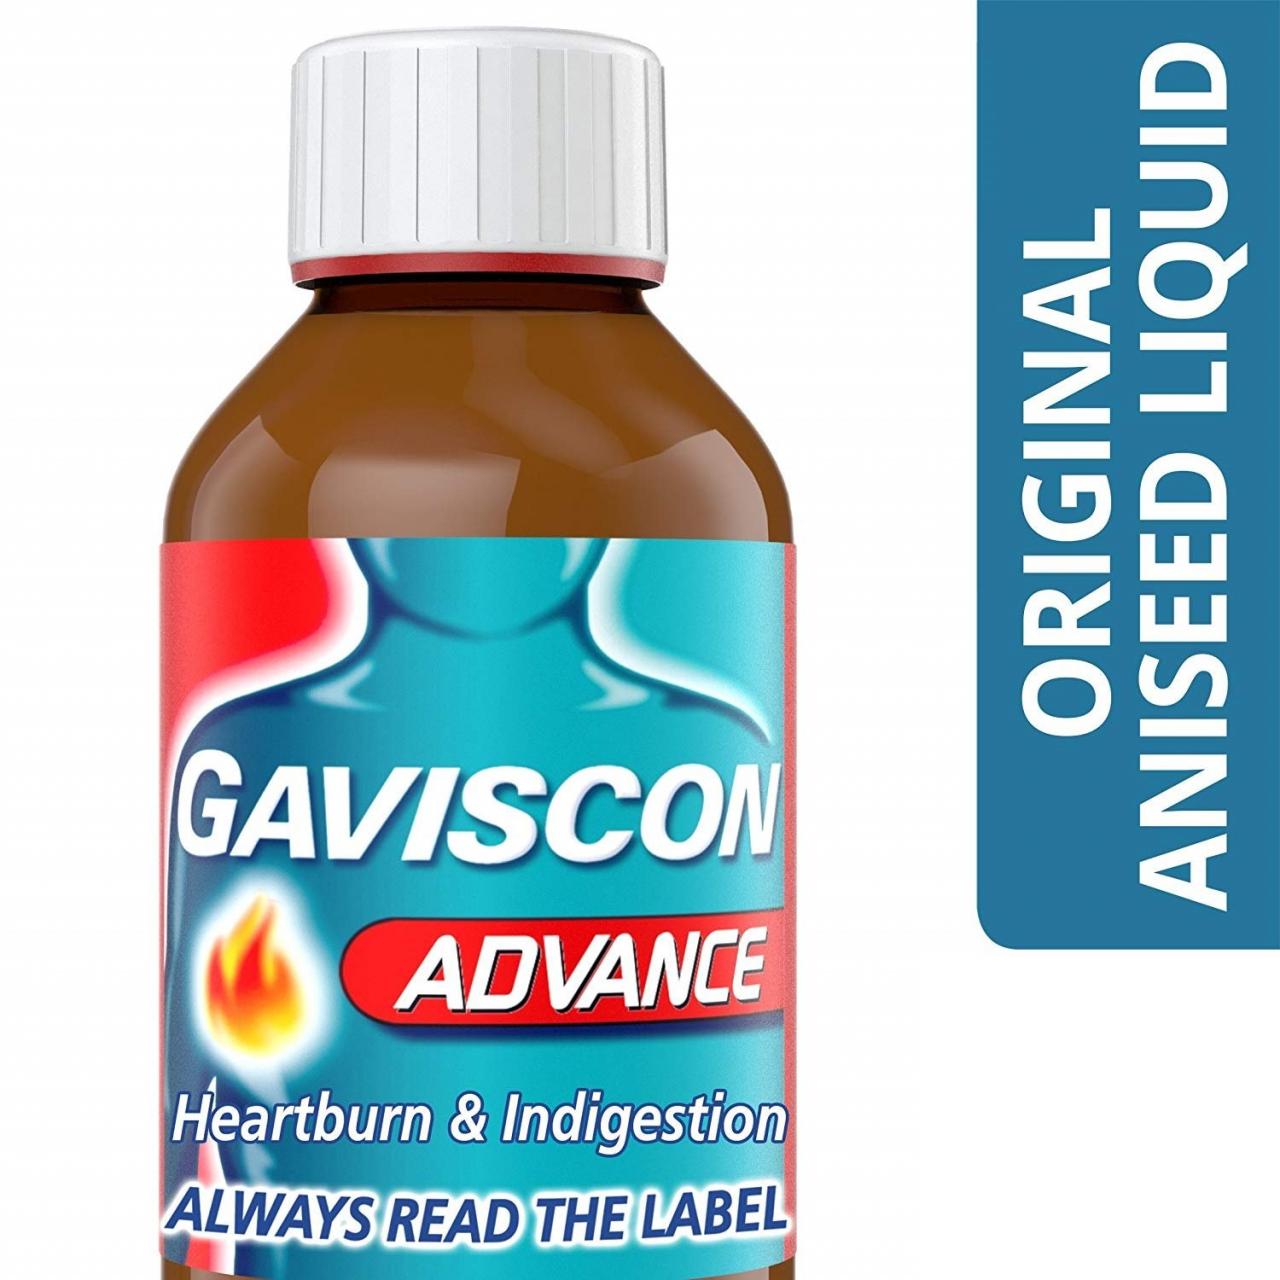 Gaviscon: Thuốc trị trào ngược dạ dày thực quản hiệu quả - Bạn biết gì về Gaviscon hồng và Gaviscon xanh?